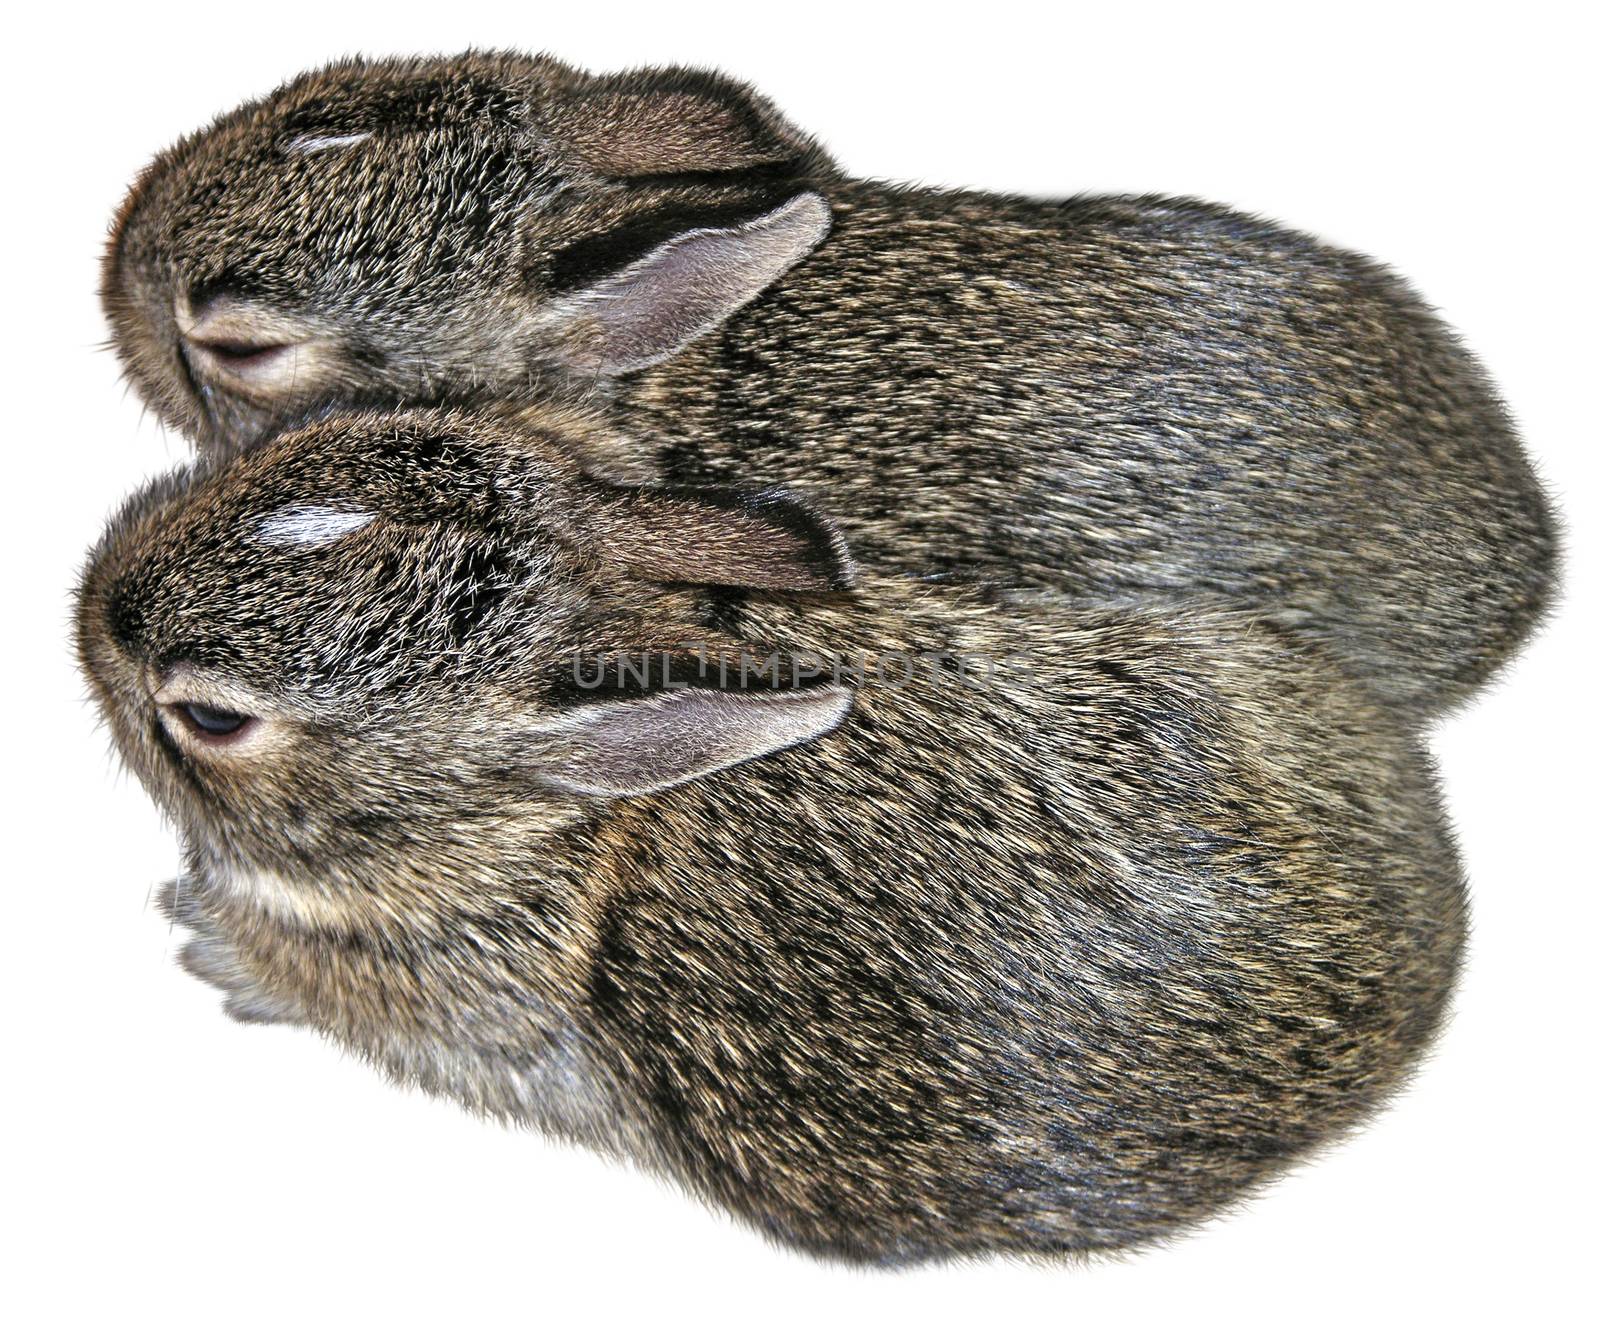 Baby Rabbits by jimlarkin